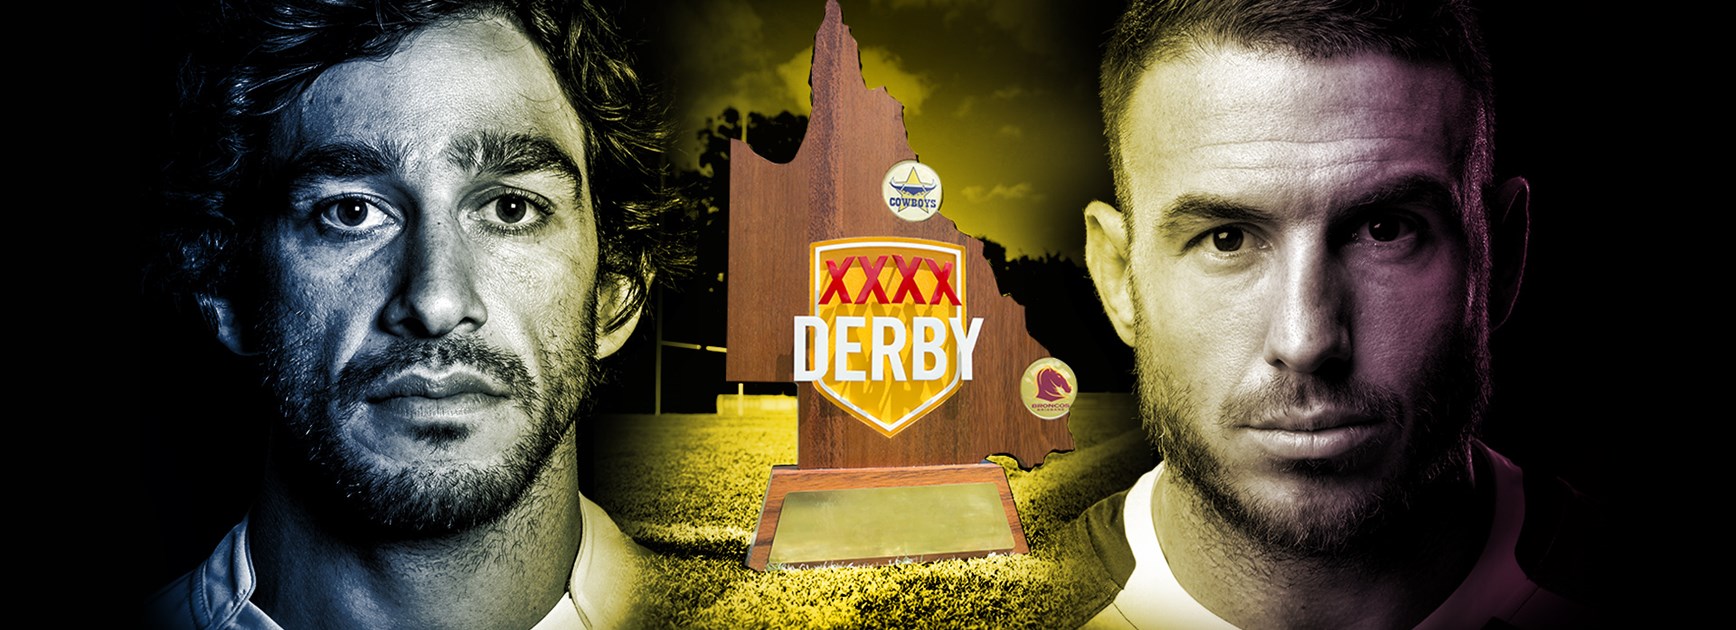 XXXX Derby igniting Queensland rivalry